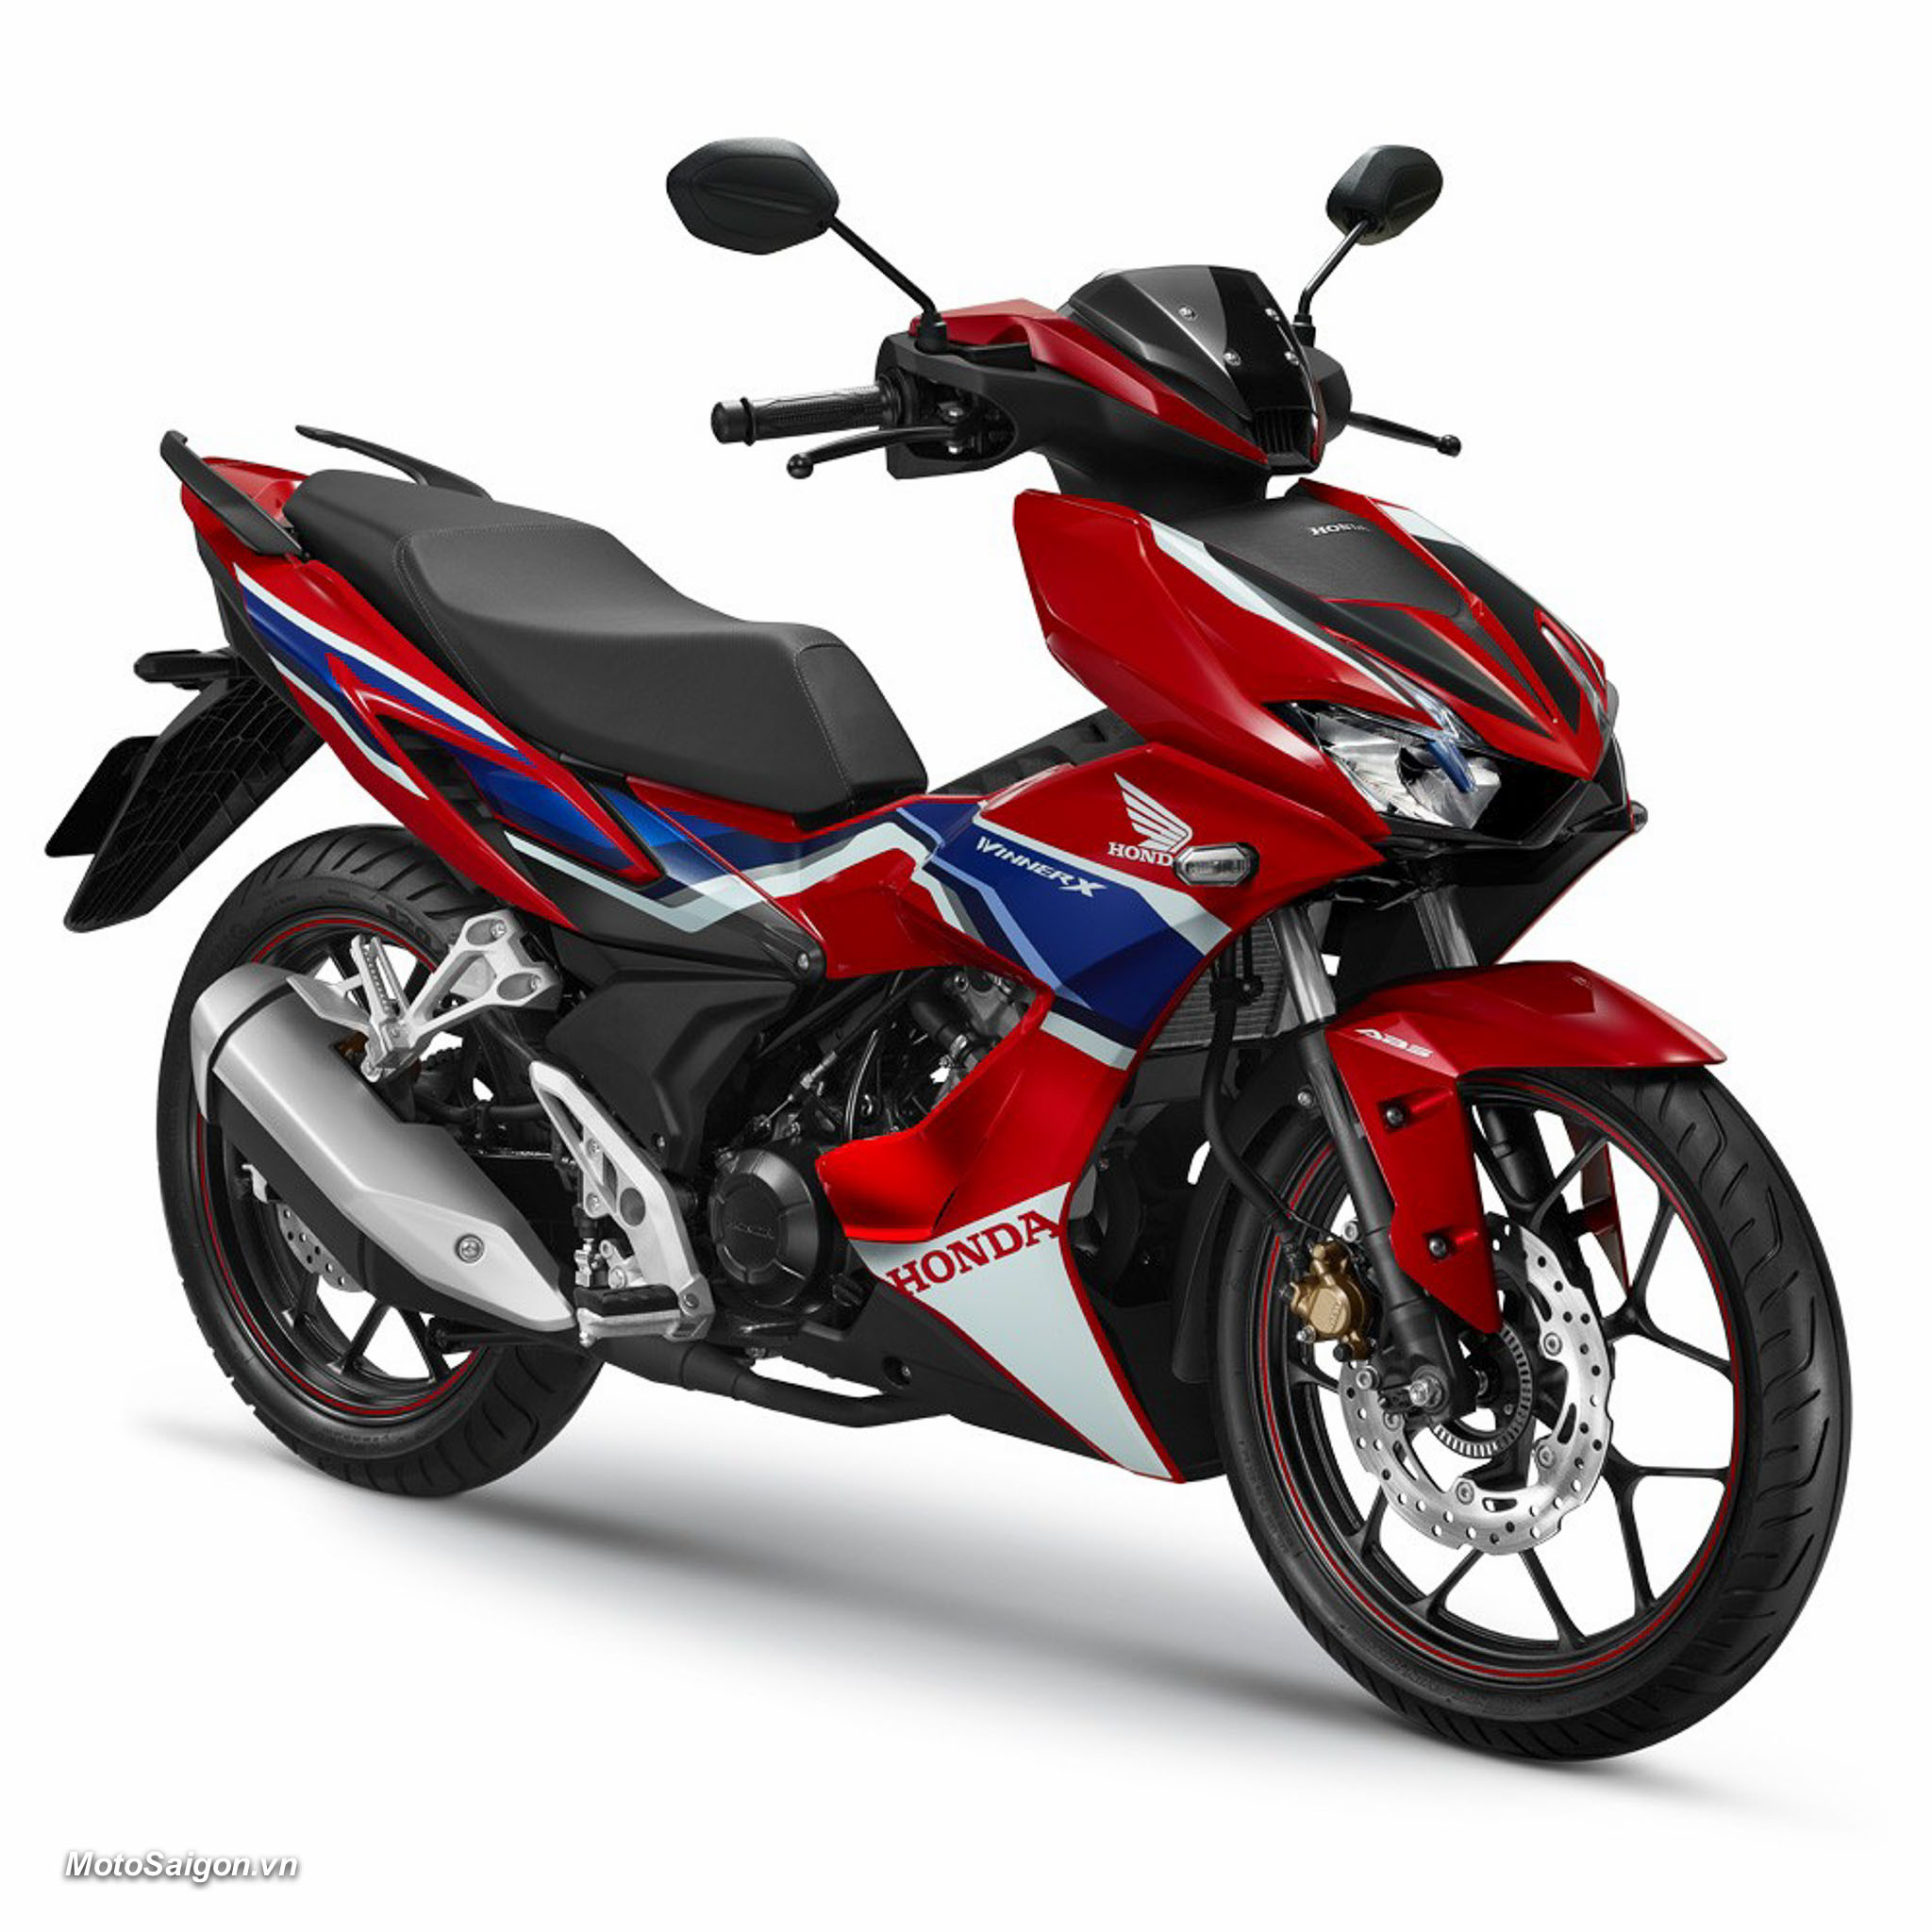 Honda bán 2 triệu xe máy tại thị trường Việt Nam năm 2021